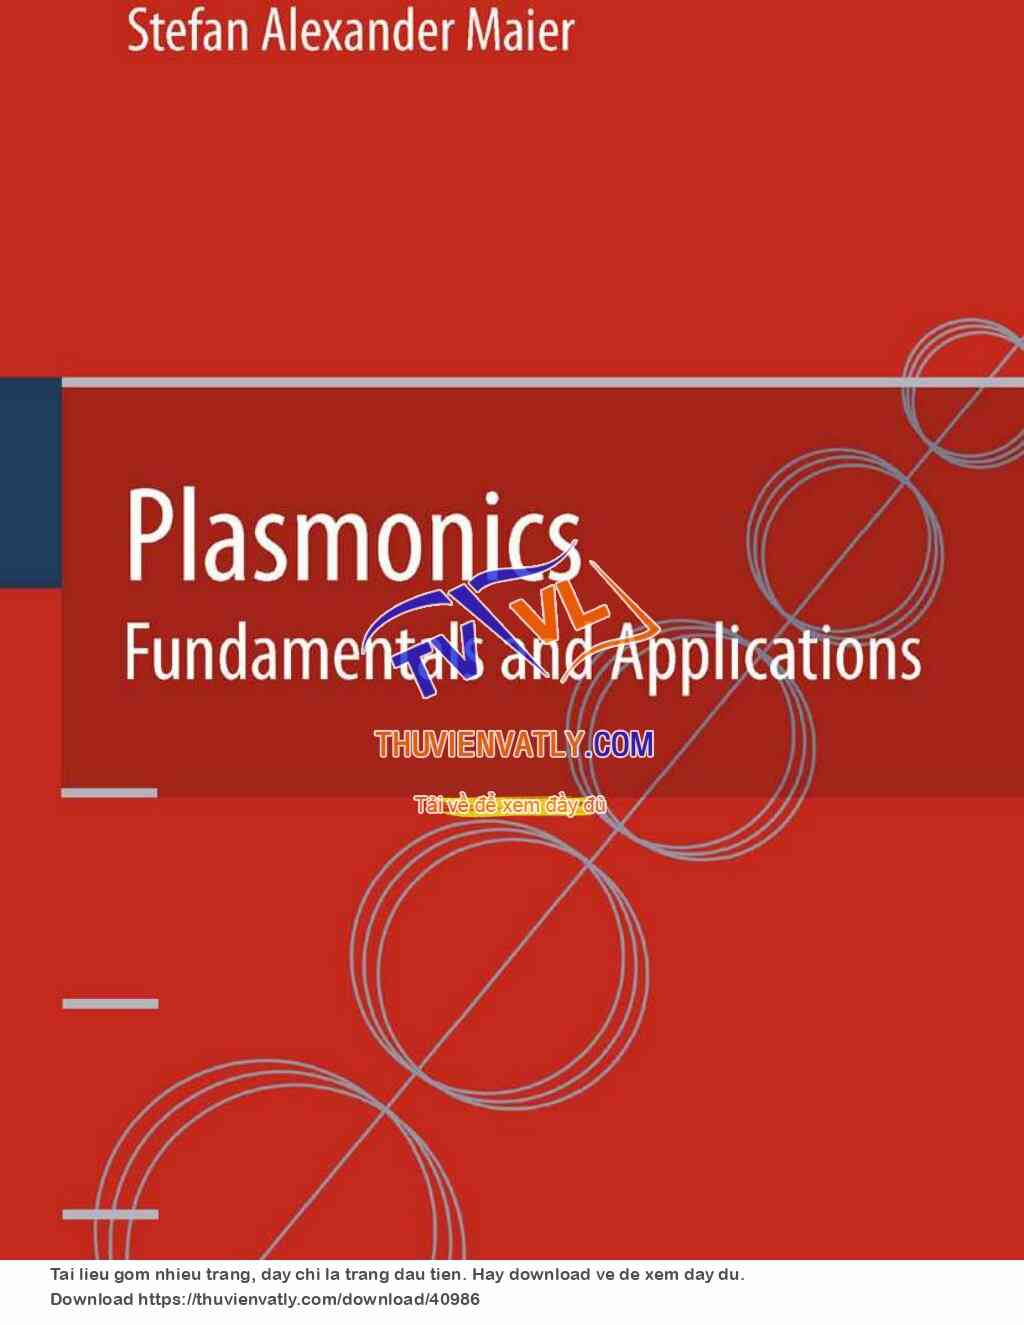 Plasmonics fundamentals and applications